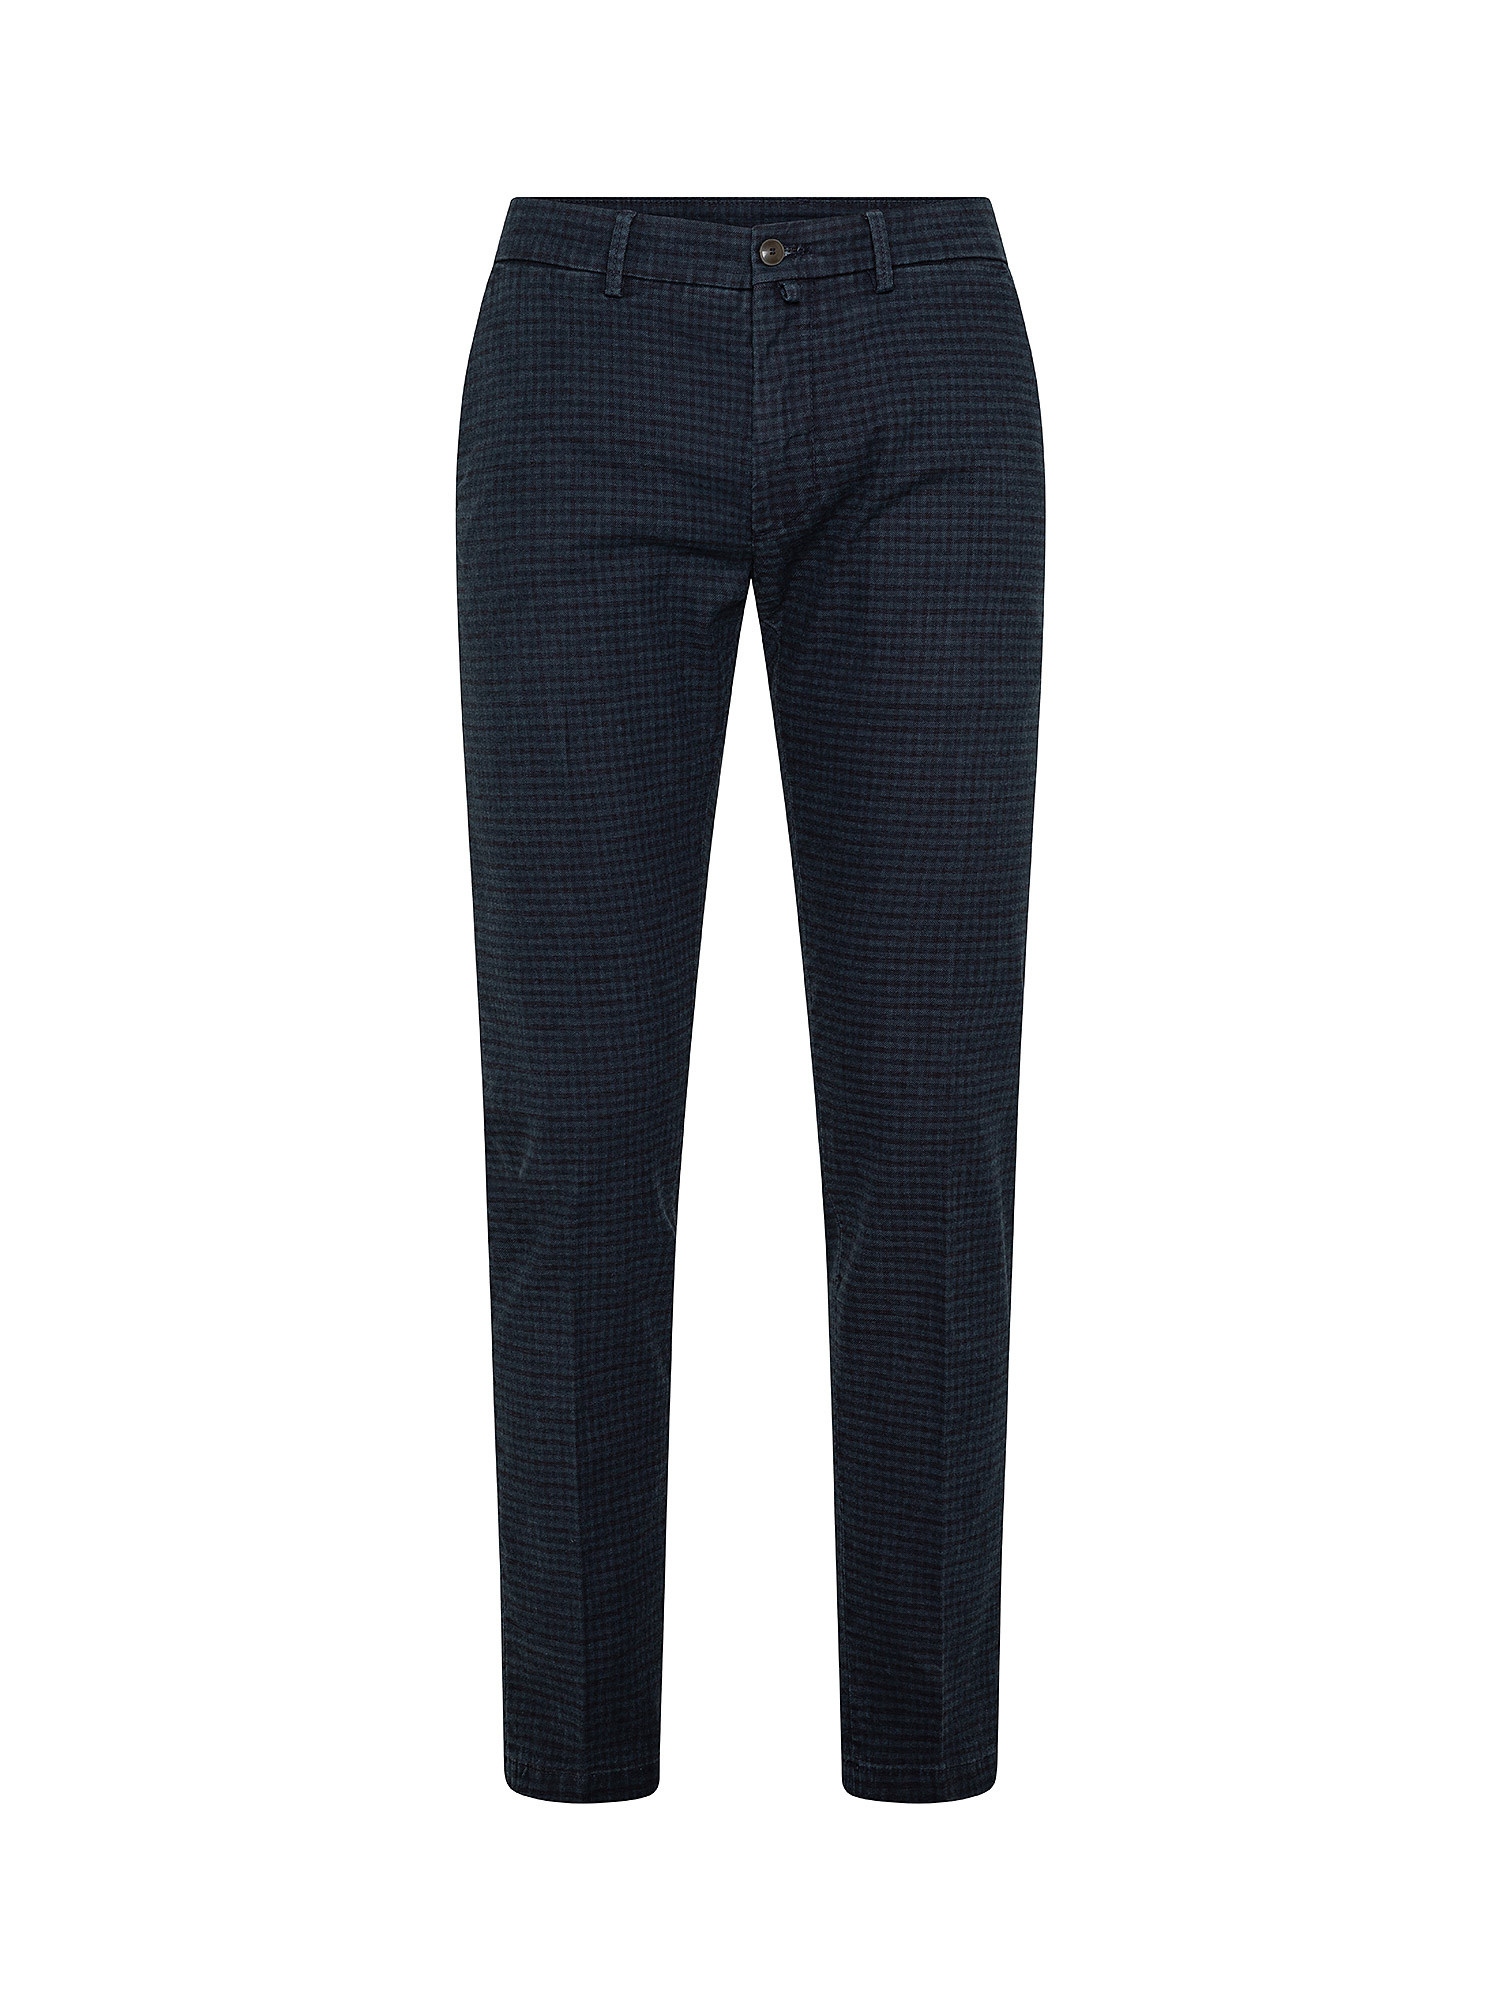 Pantaloni Chino, Blu, large image number 0